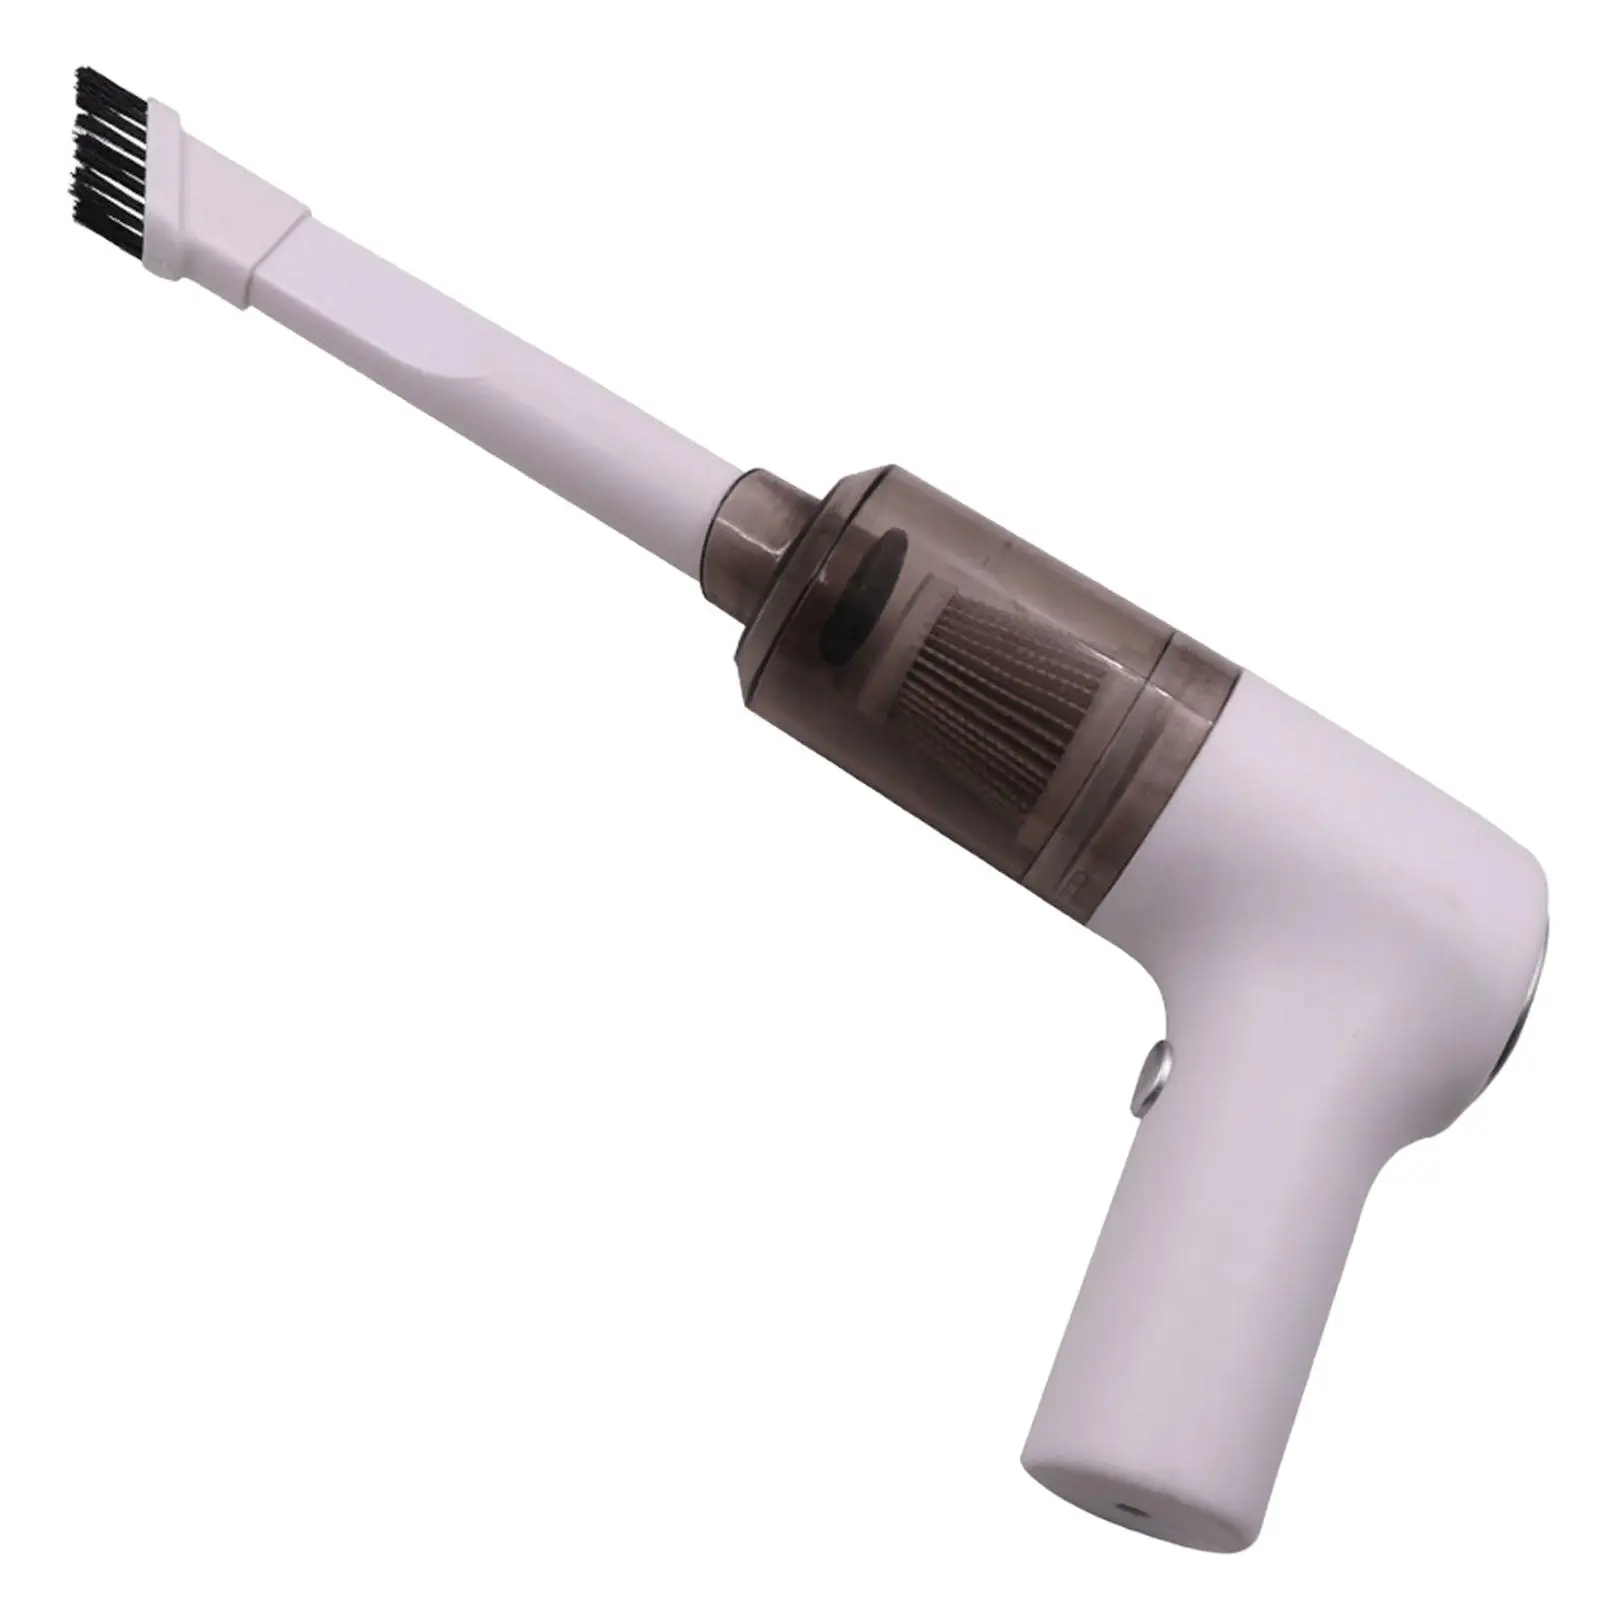 Portable Handheld Vacuum Cleaner for Hair Cleaning Desktop